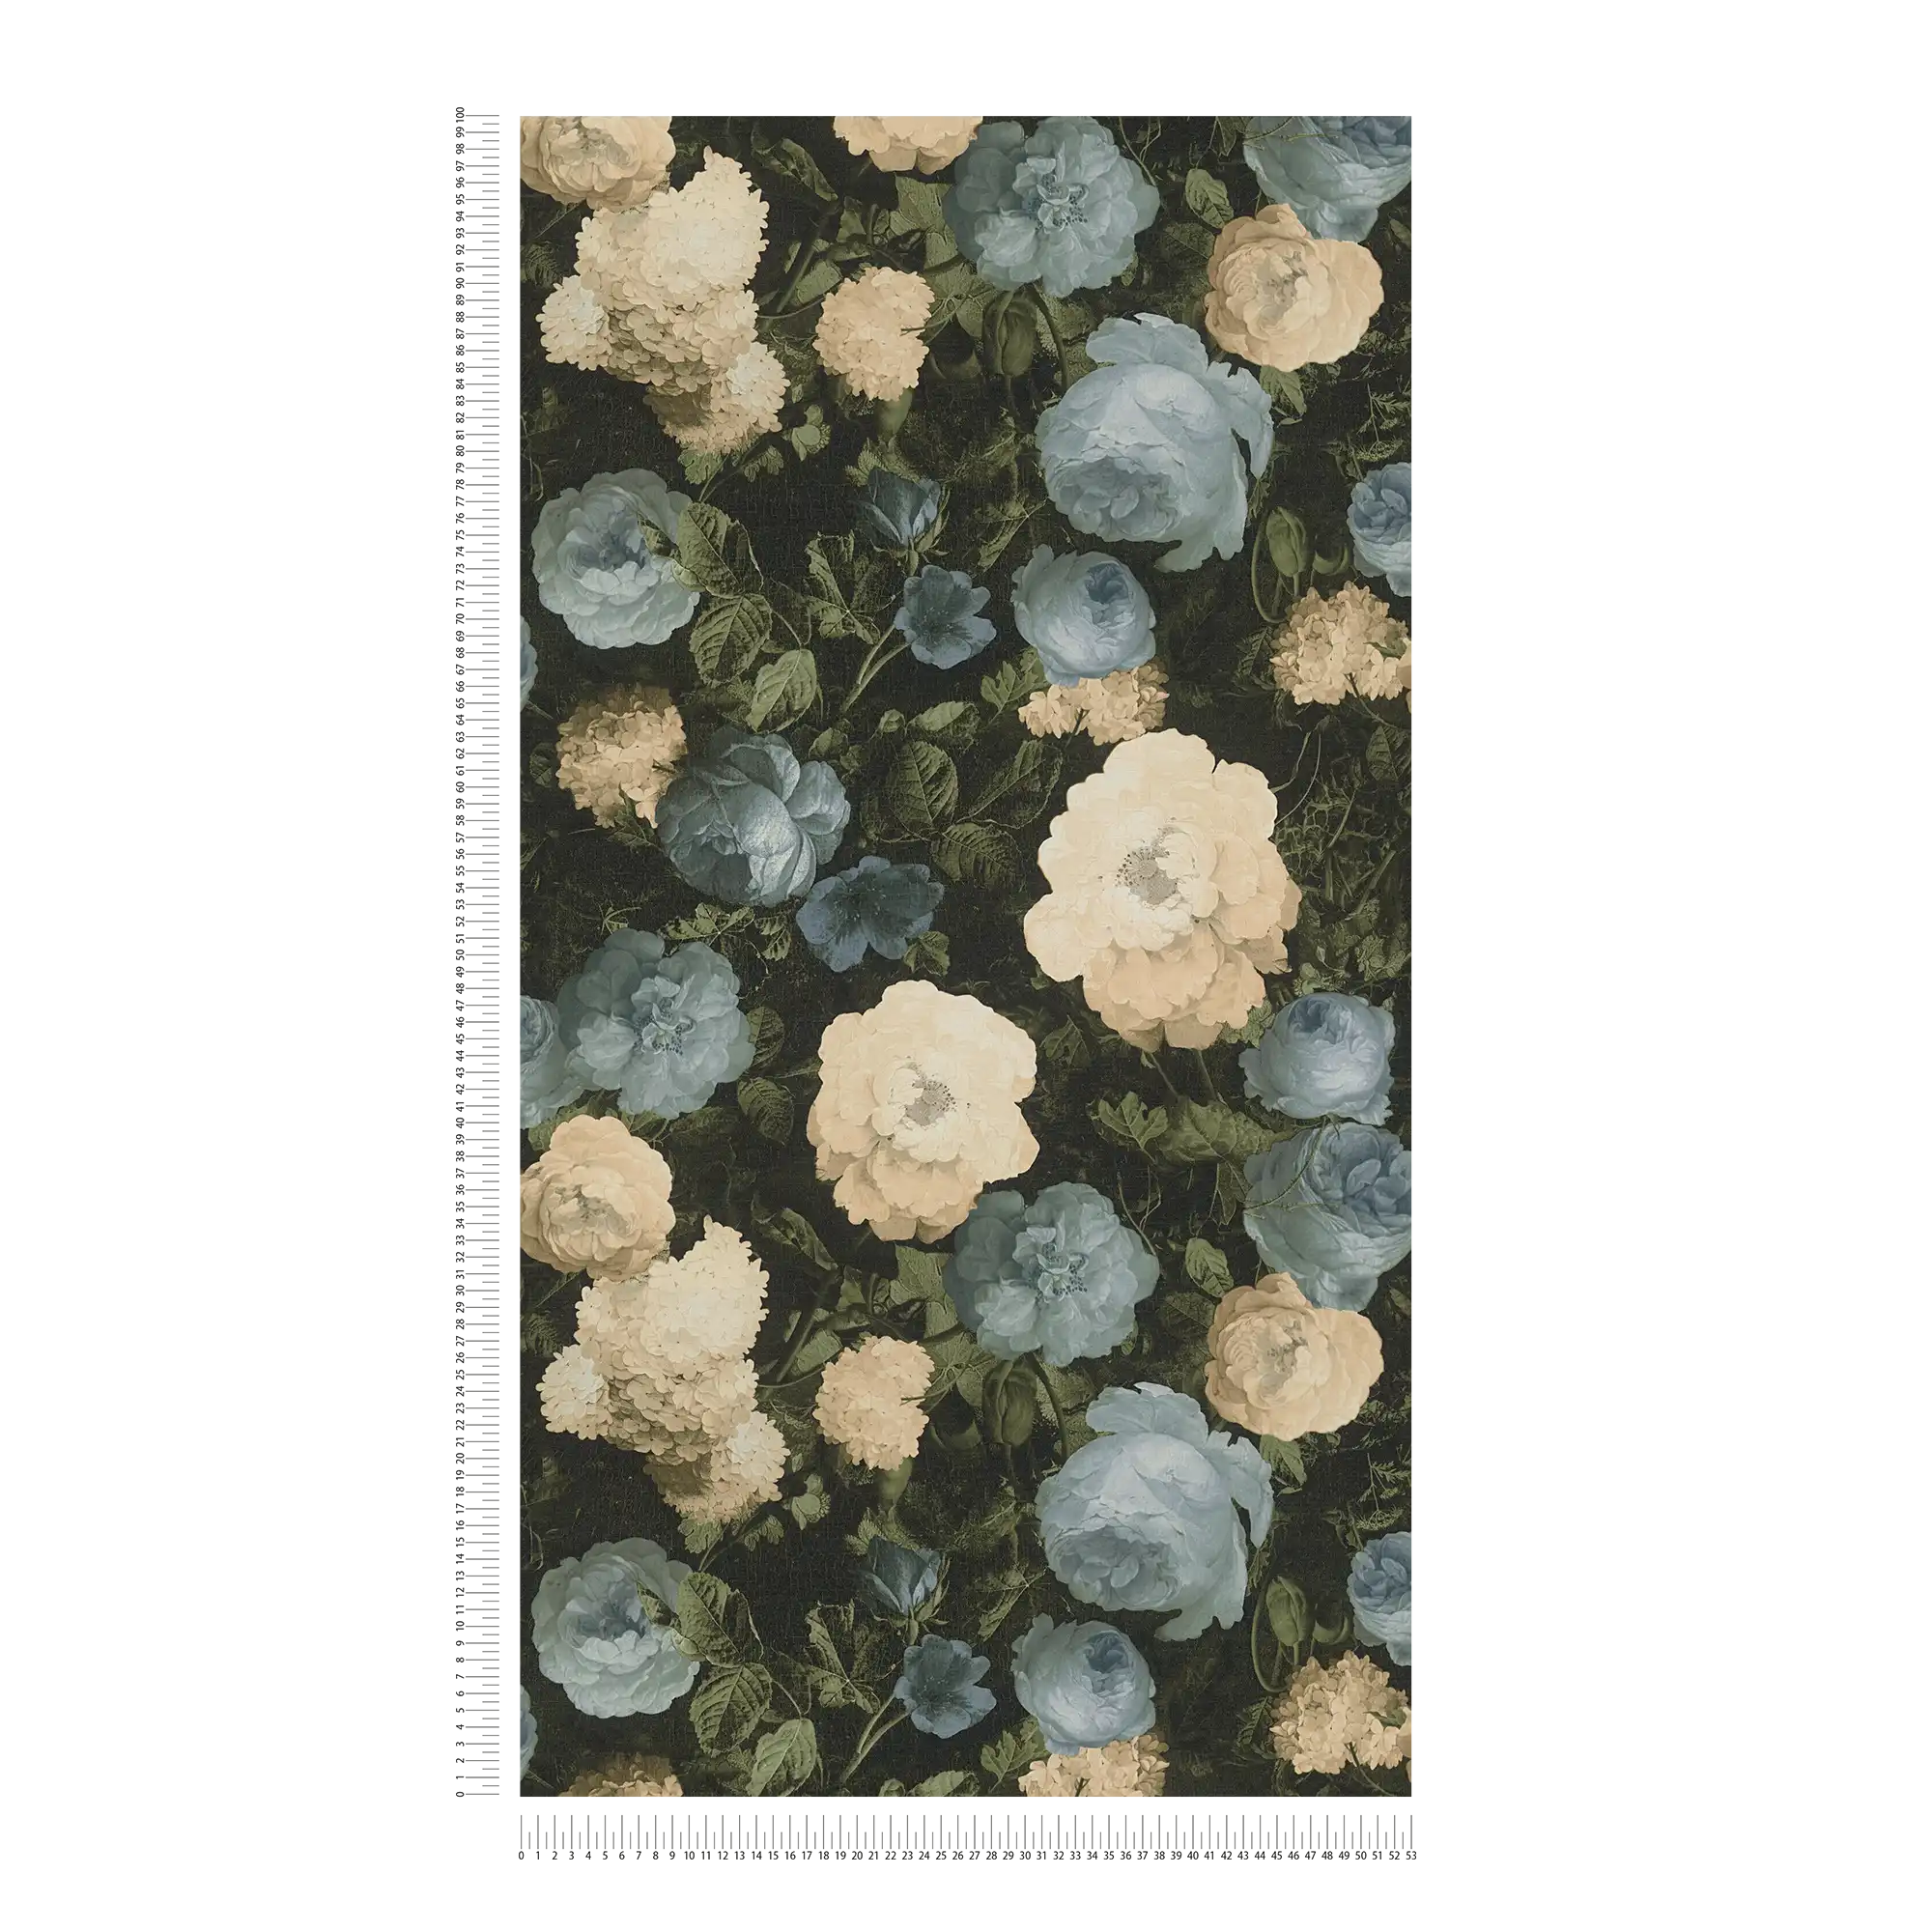             Rosen-Tapete, klassisches Blütenmuster – Blau, Grün, Creme
        